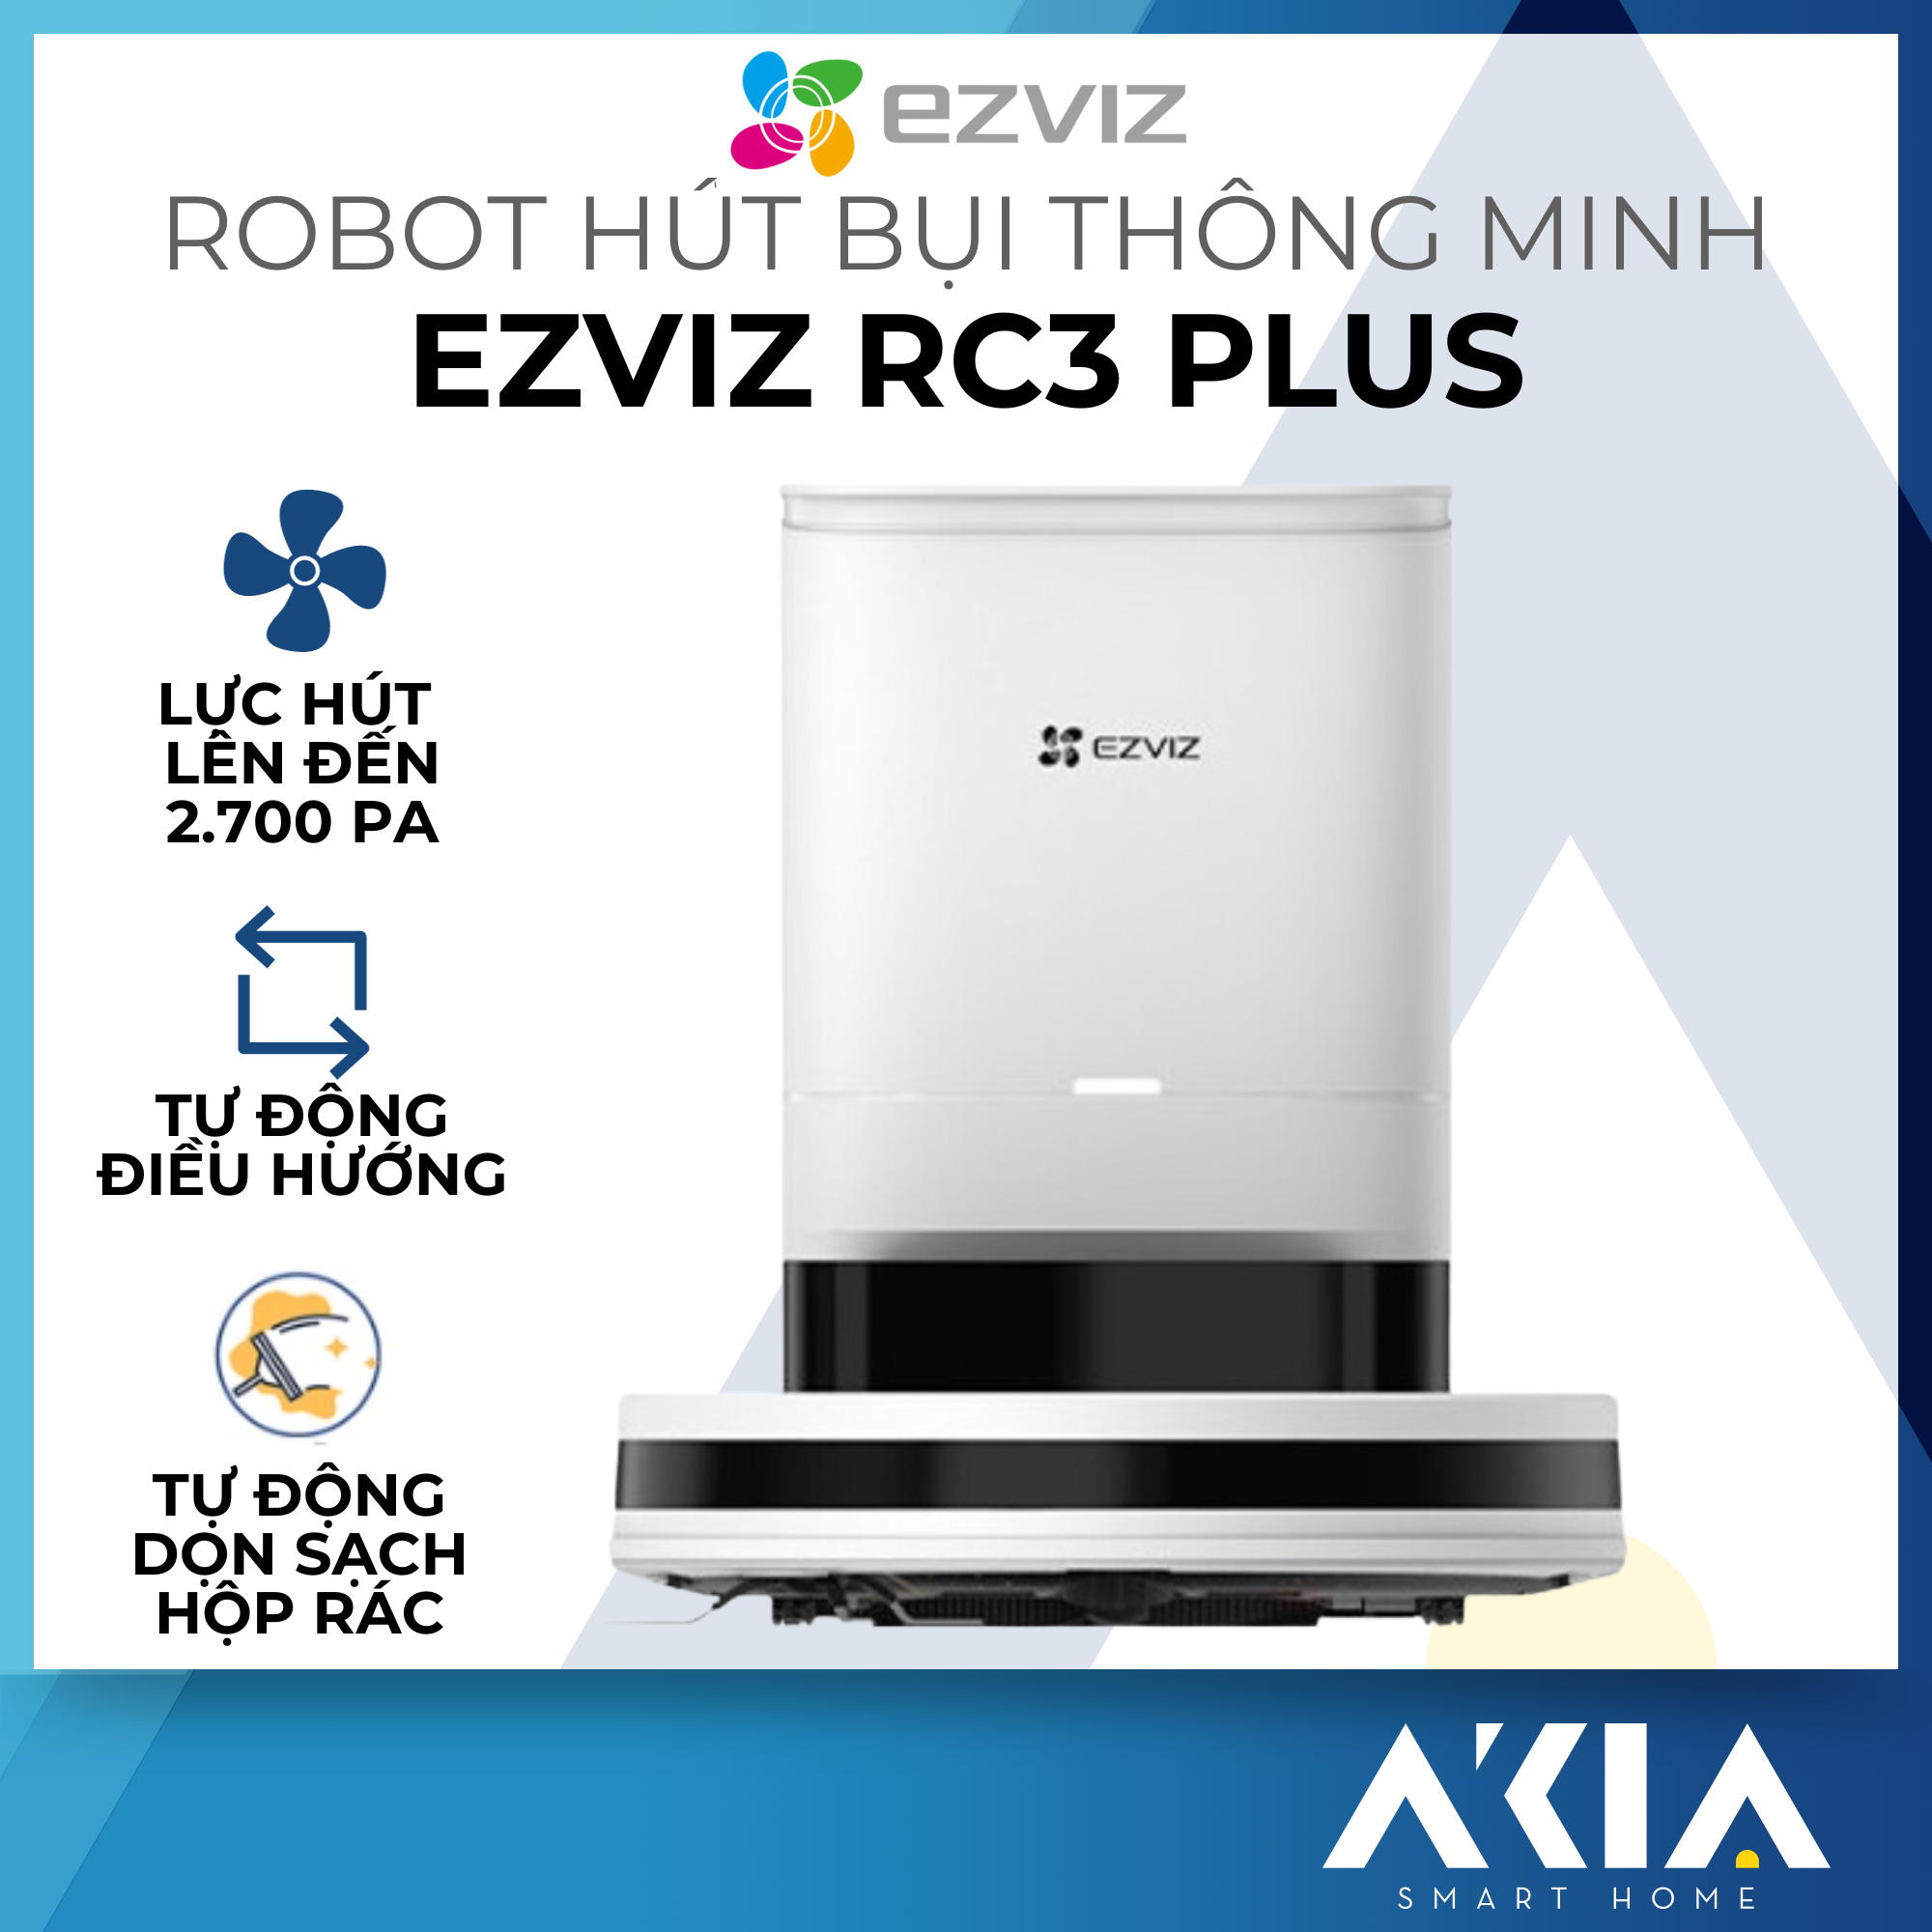 Robot hút bụi thông minh Ezviz RC3 / RC3 Plus - Lực hút 2700 Pa, Tự động điều hướng và né vật cản, Điều khiển remote đi kèm - Hàng chính hãng